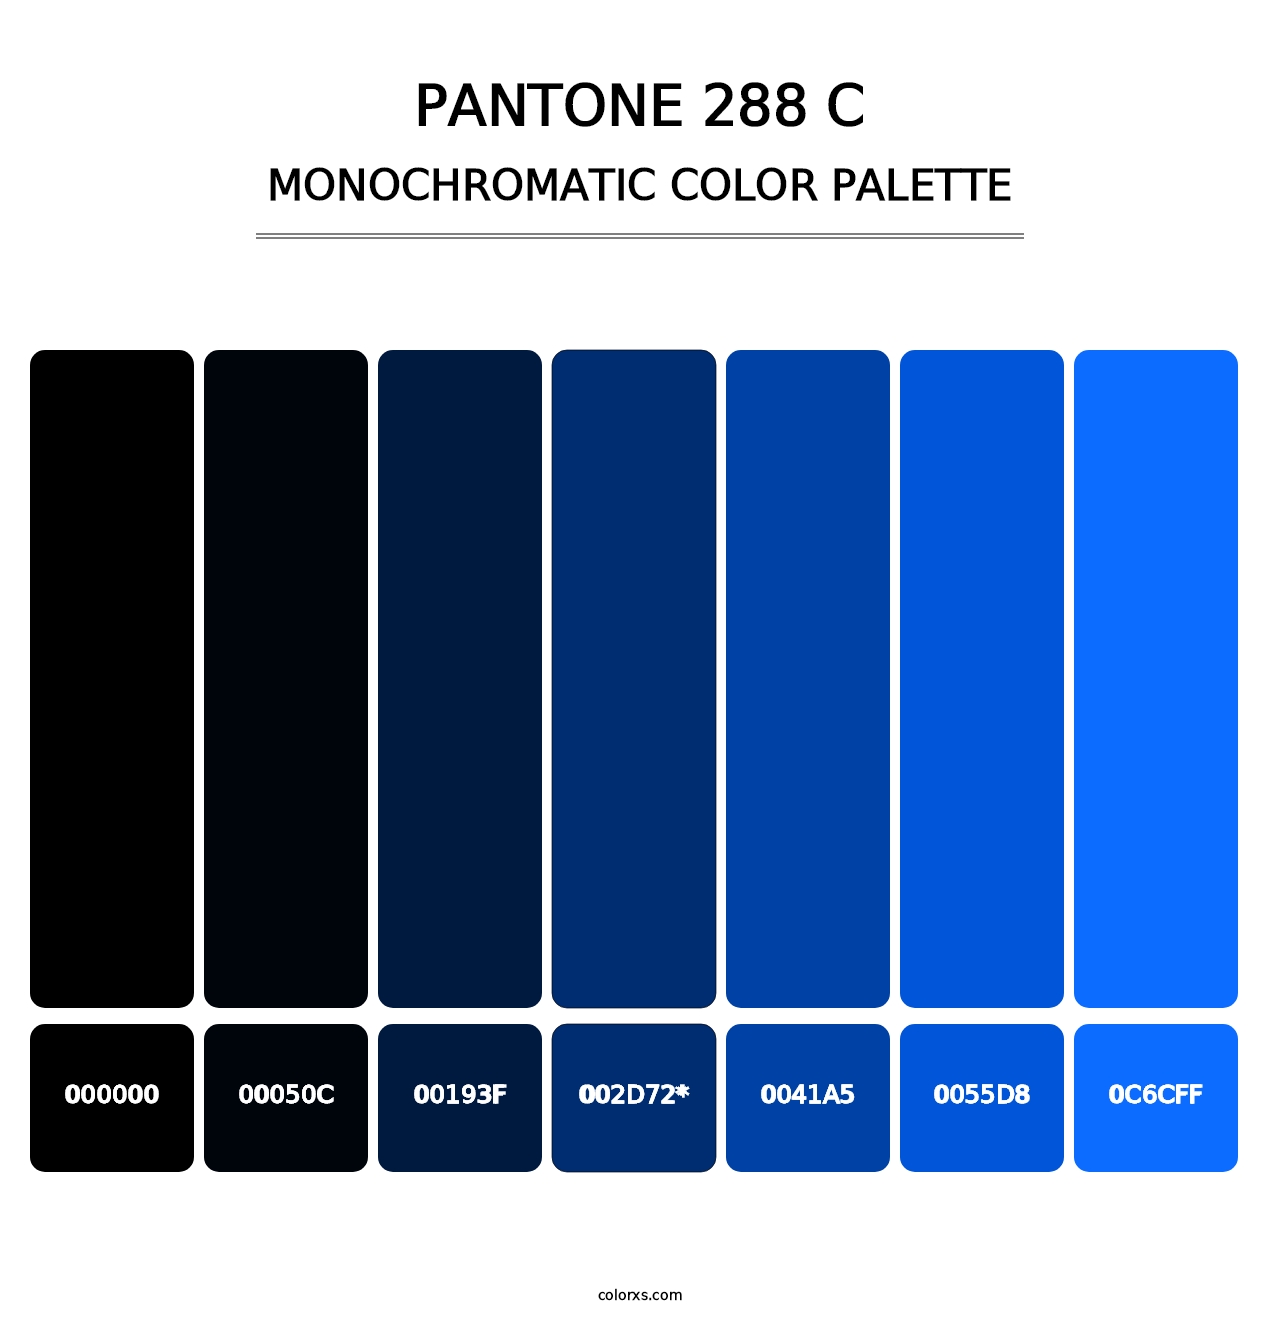 PANTONE 288 C - Monochromatic Color Palette